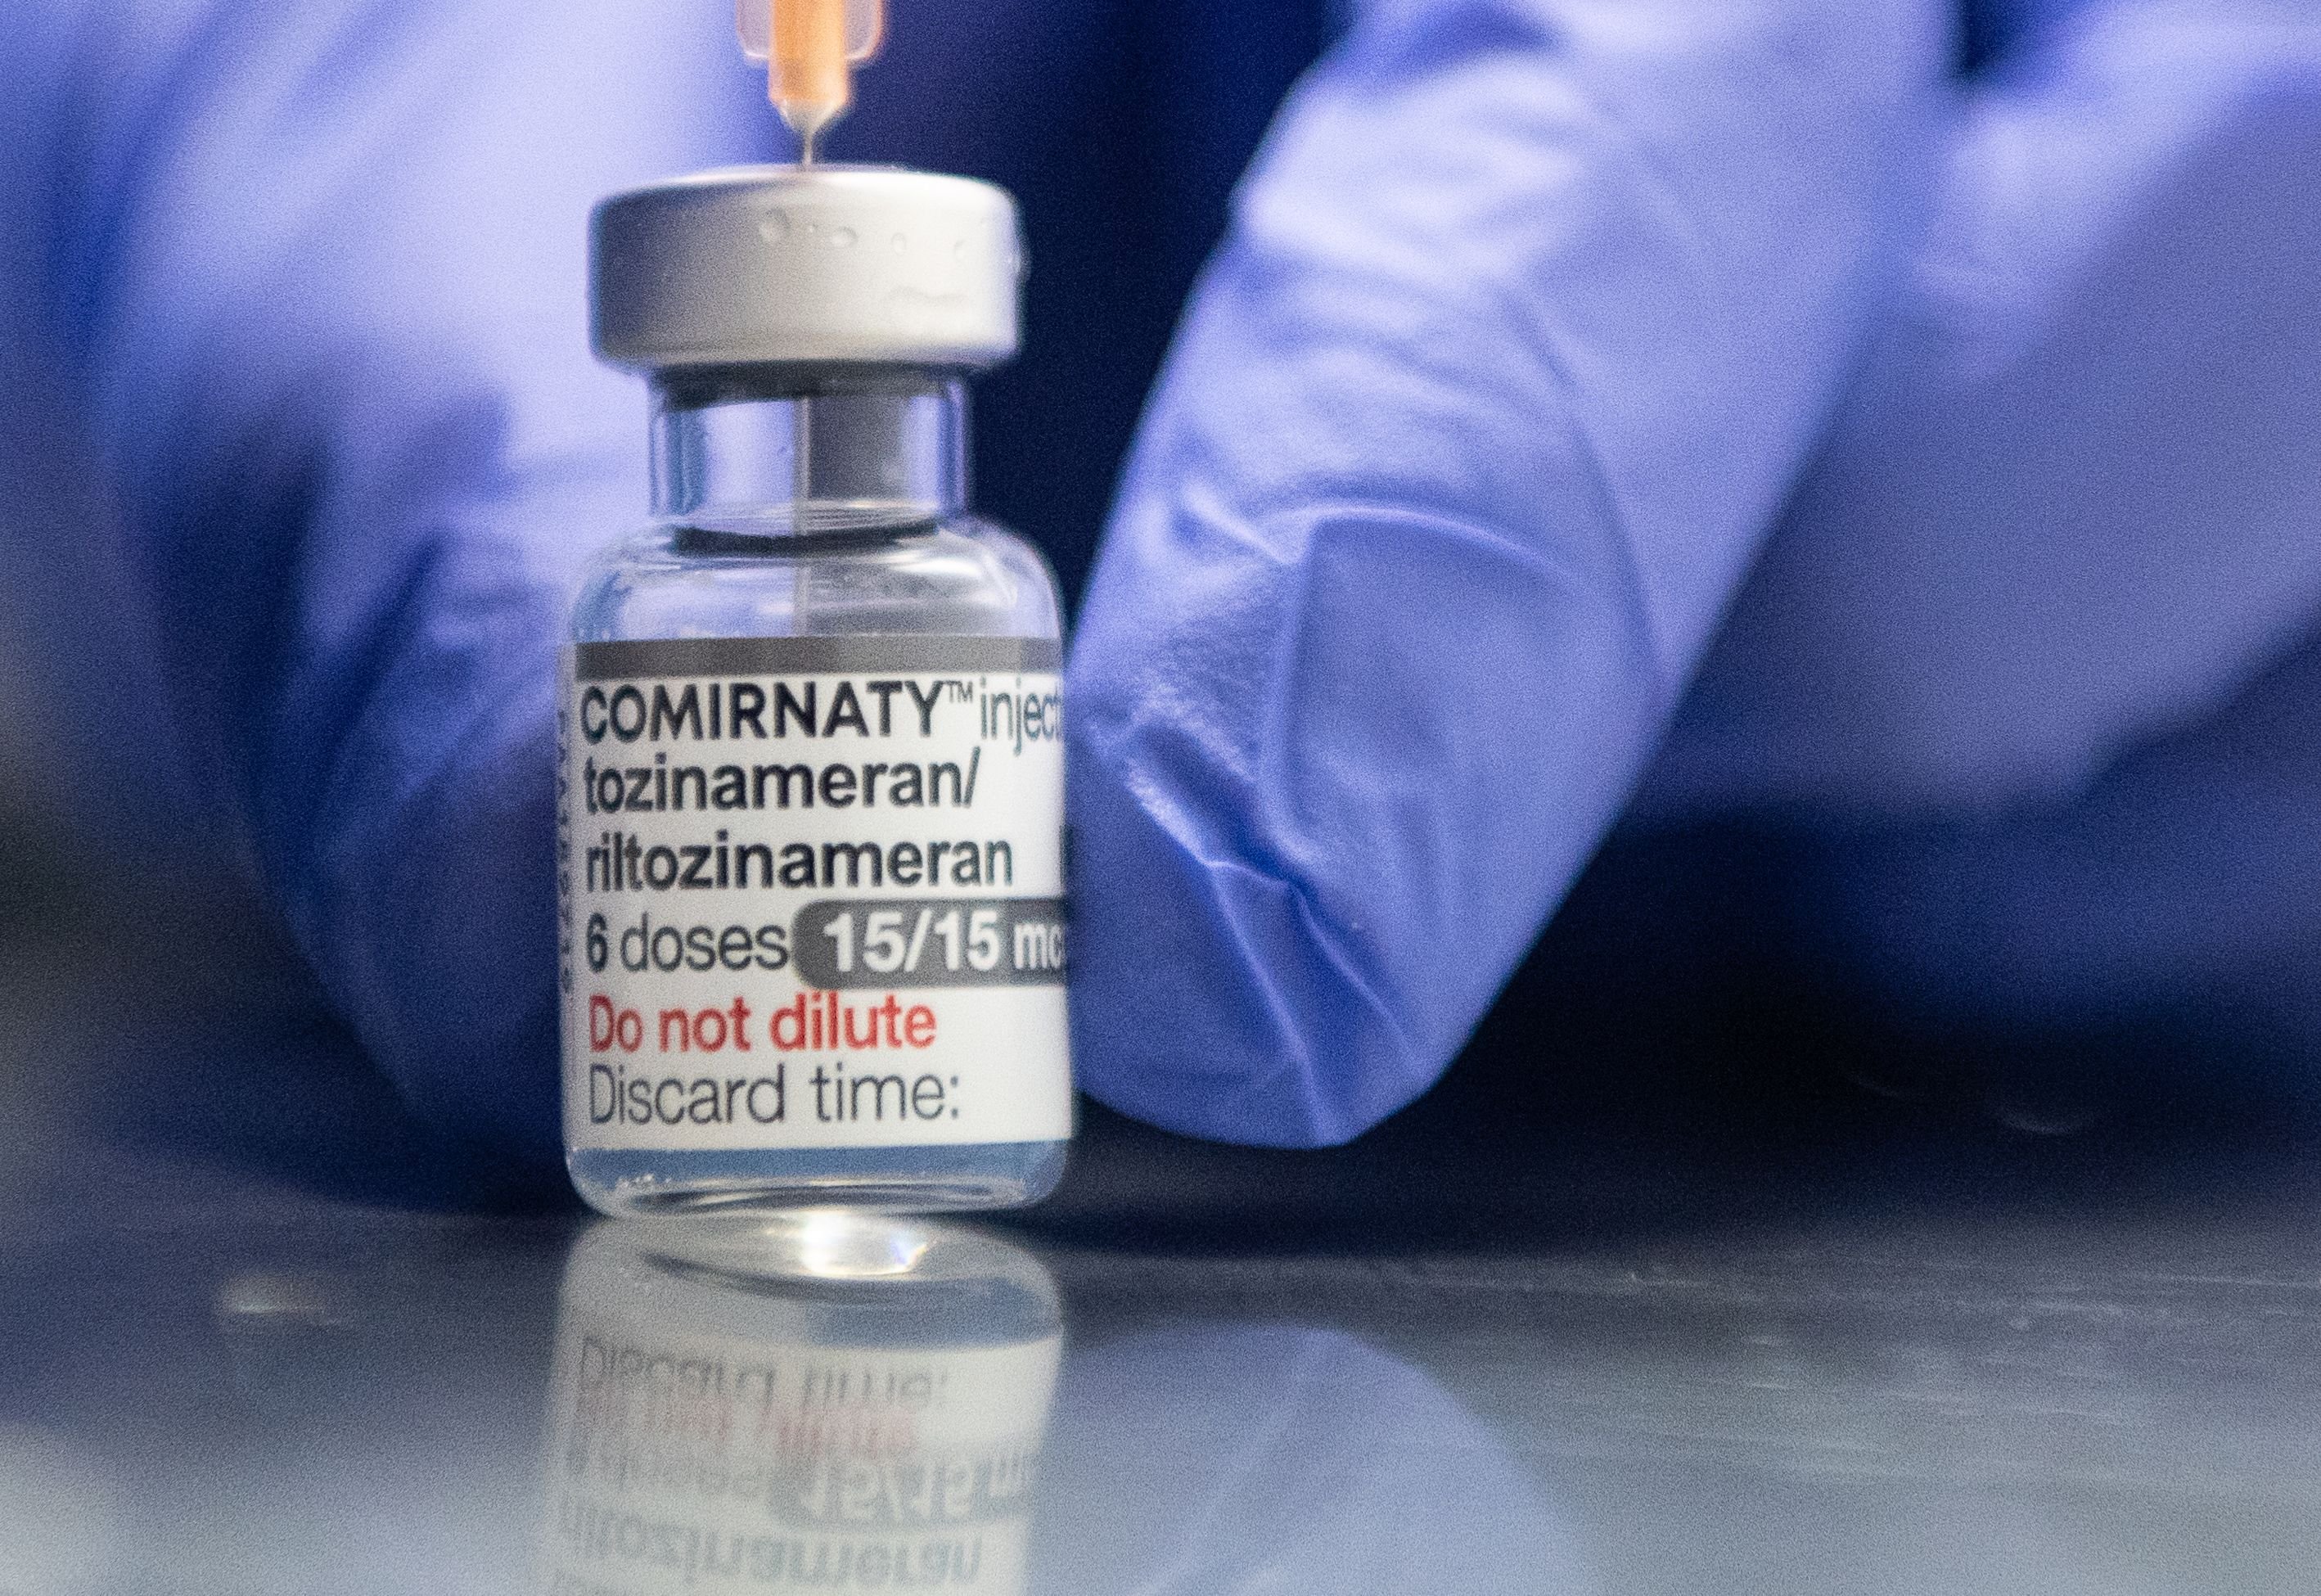 Corona-Impfungen für mehrere Milliarden Euro landen im Müll